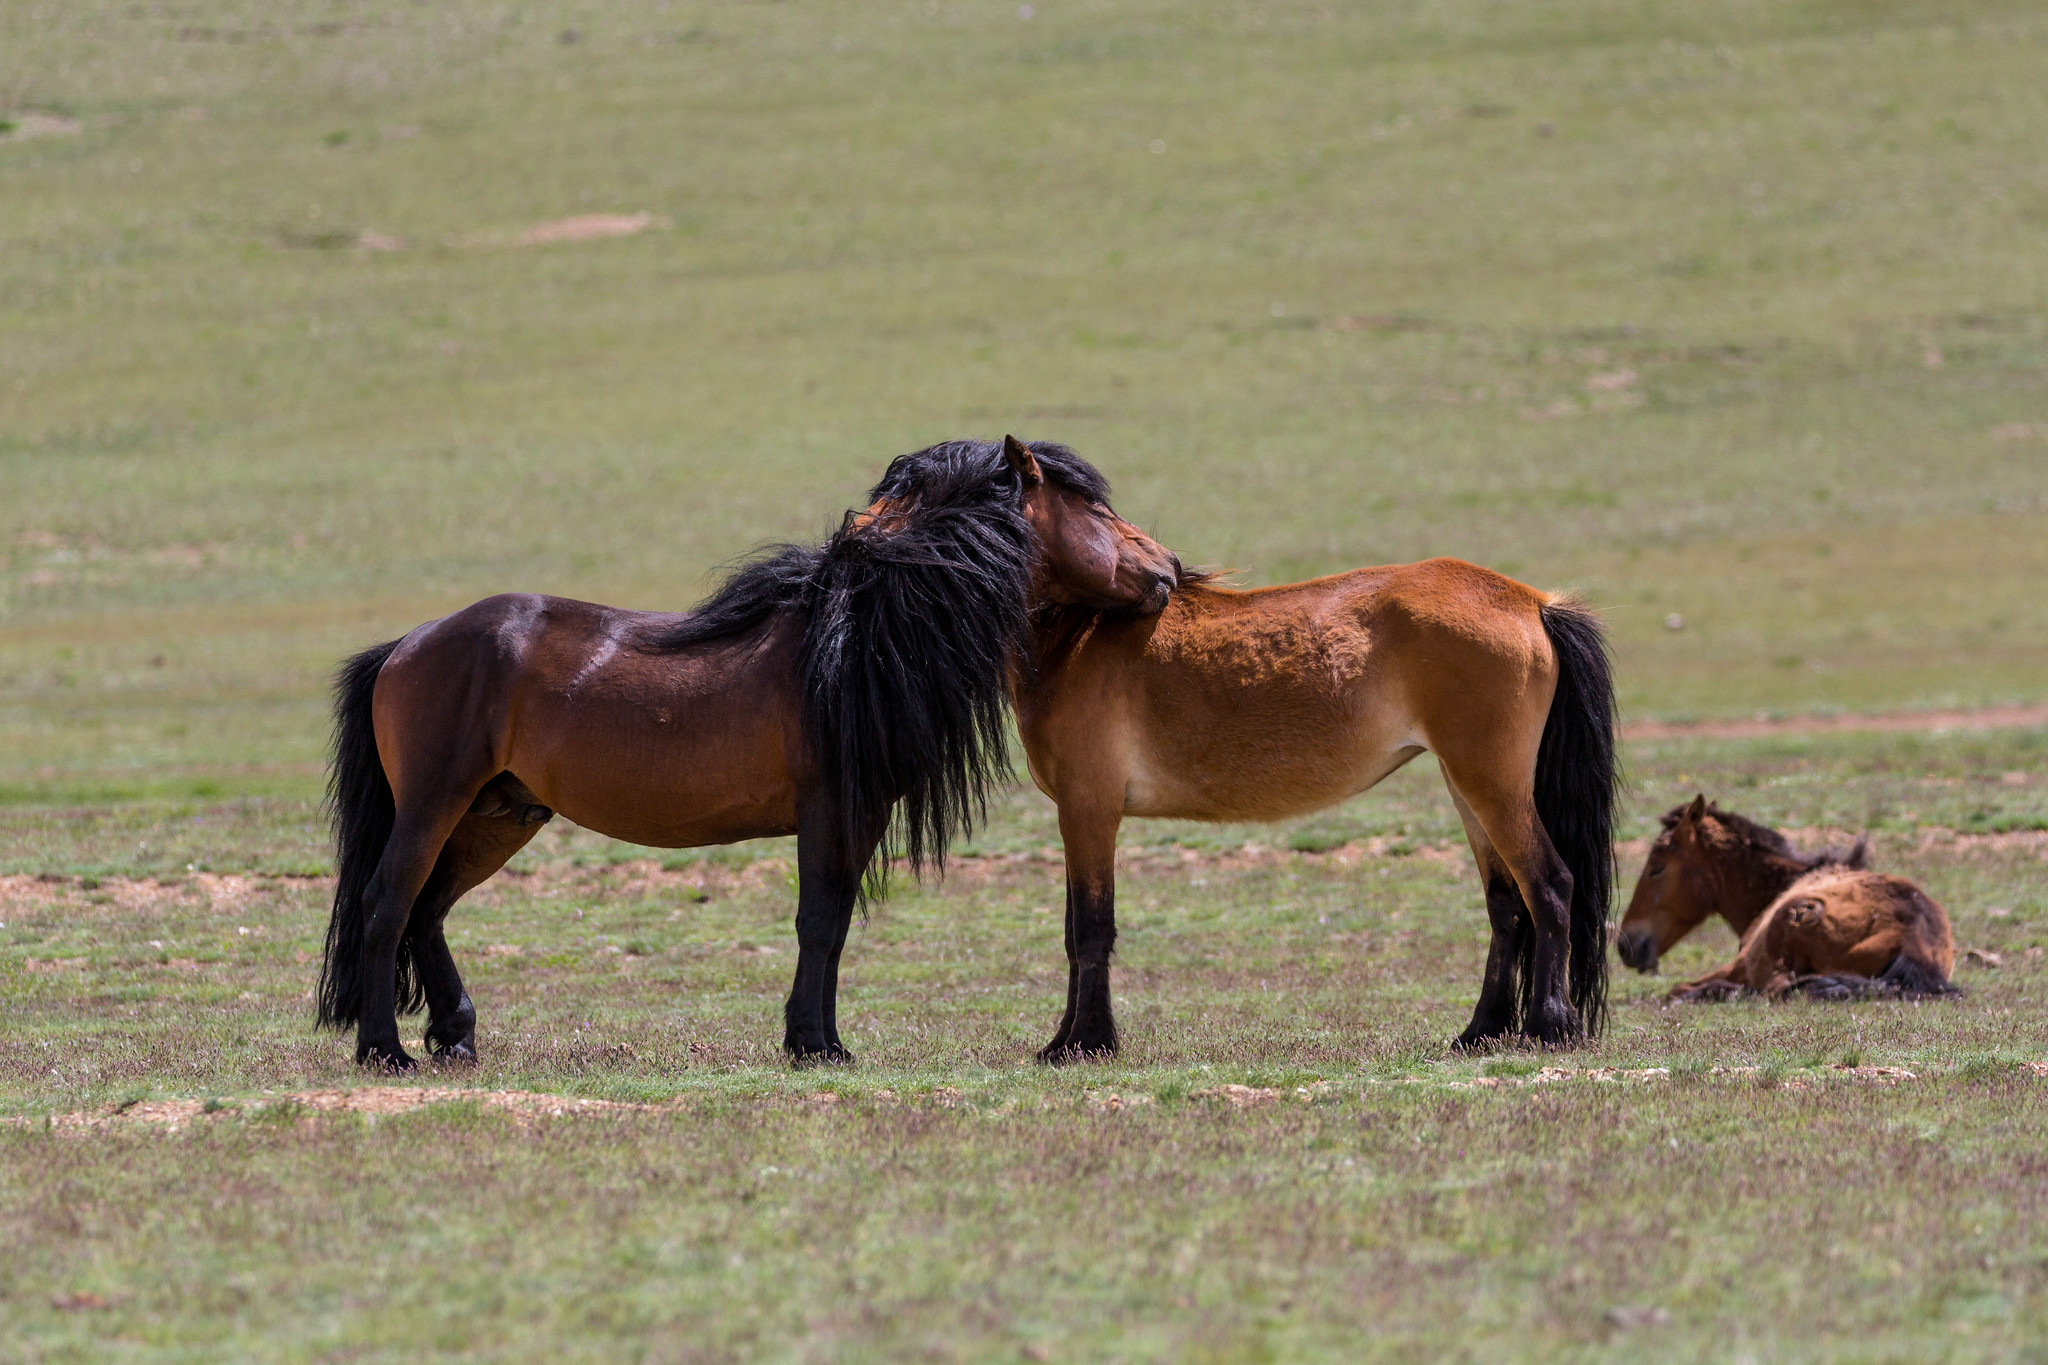 Horses in Mongolia - Mongolia